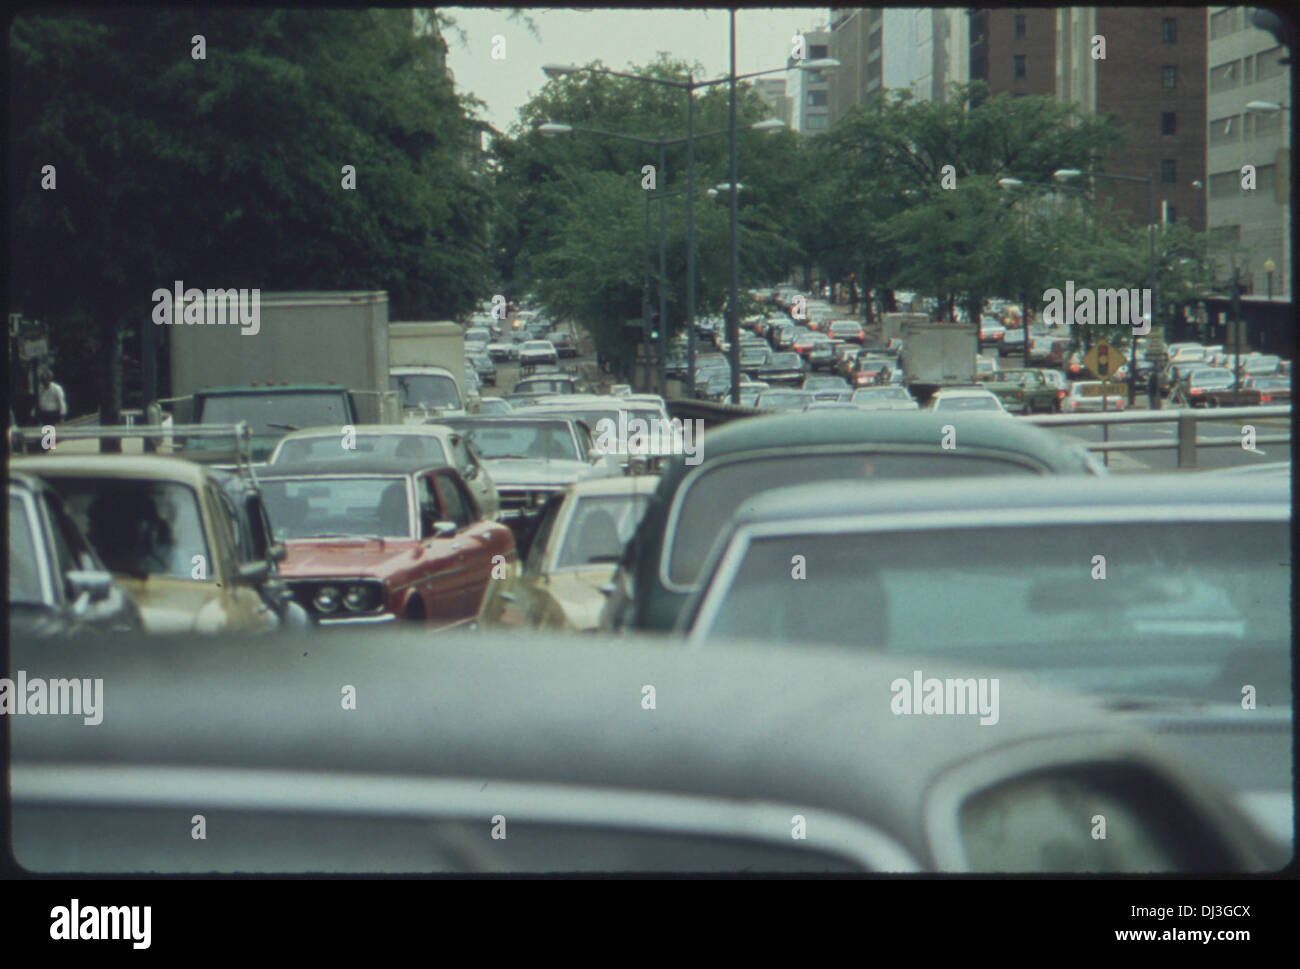 Monumentales atascos de tráfico producido durante una huelga de autobuses en la CIUDAD DE WASHINGTON, Distrito de Columbia, en mayo de 1974, en . 729 Foto de stock